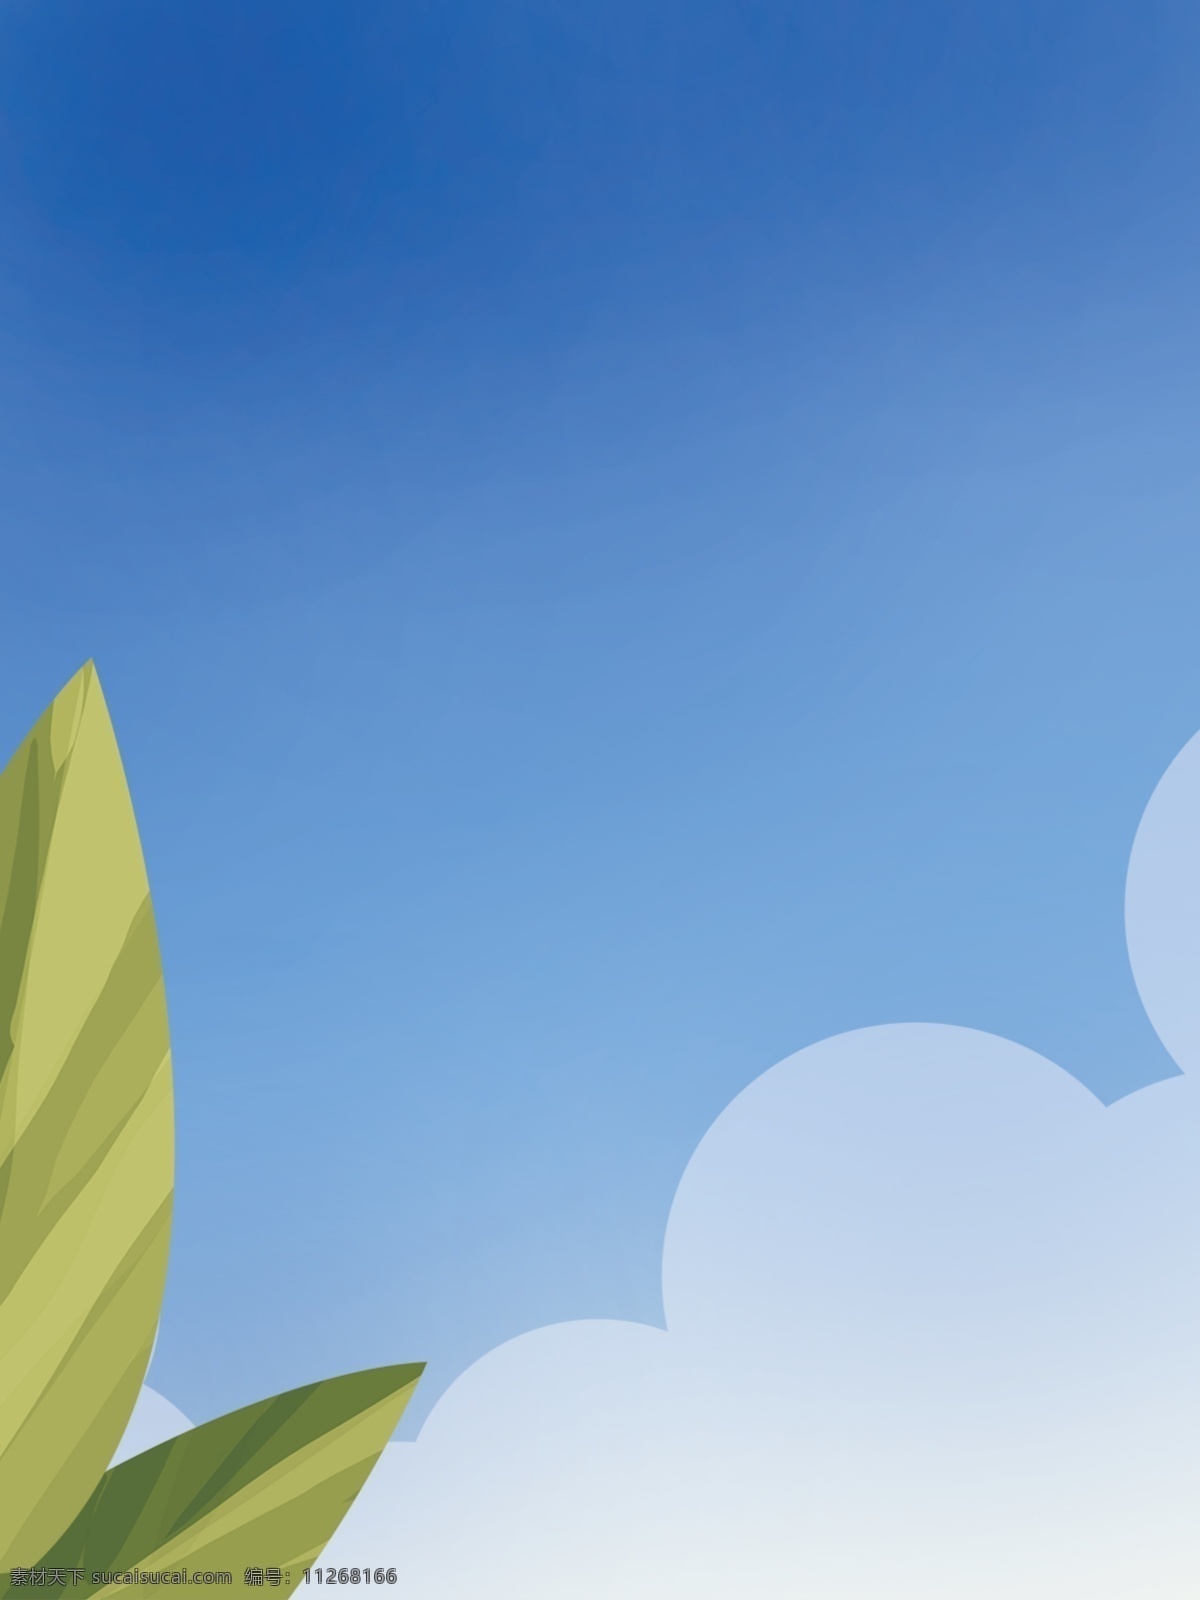 彩绘 清新 夏季 植物 背景 夏季植物 彩色背景 背景设计 手绘背景 蓝天白云 广告背景